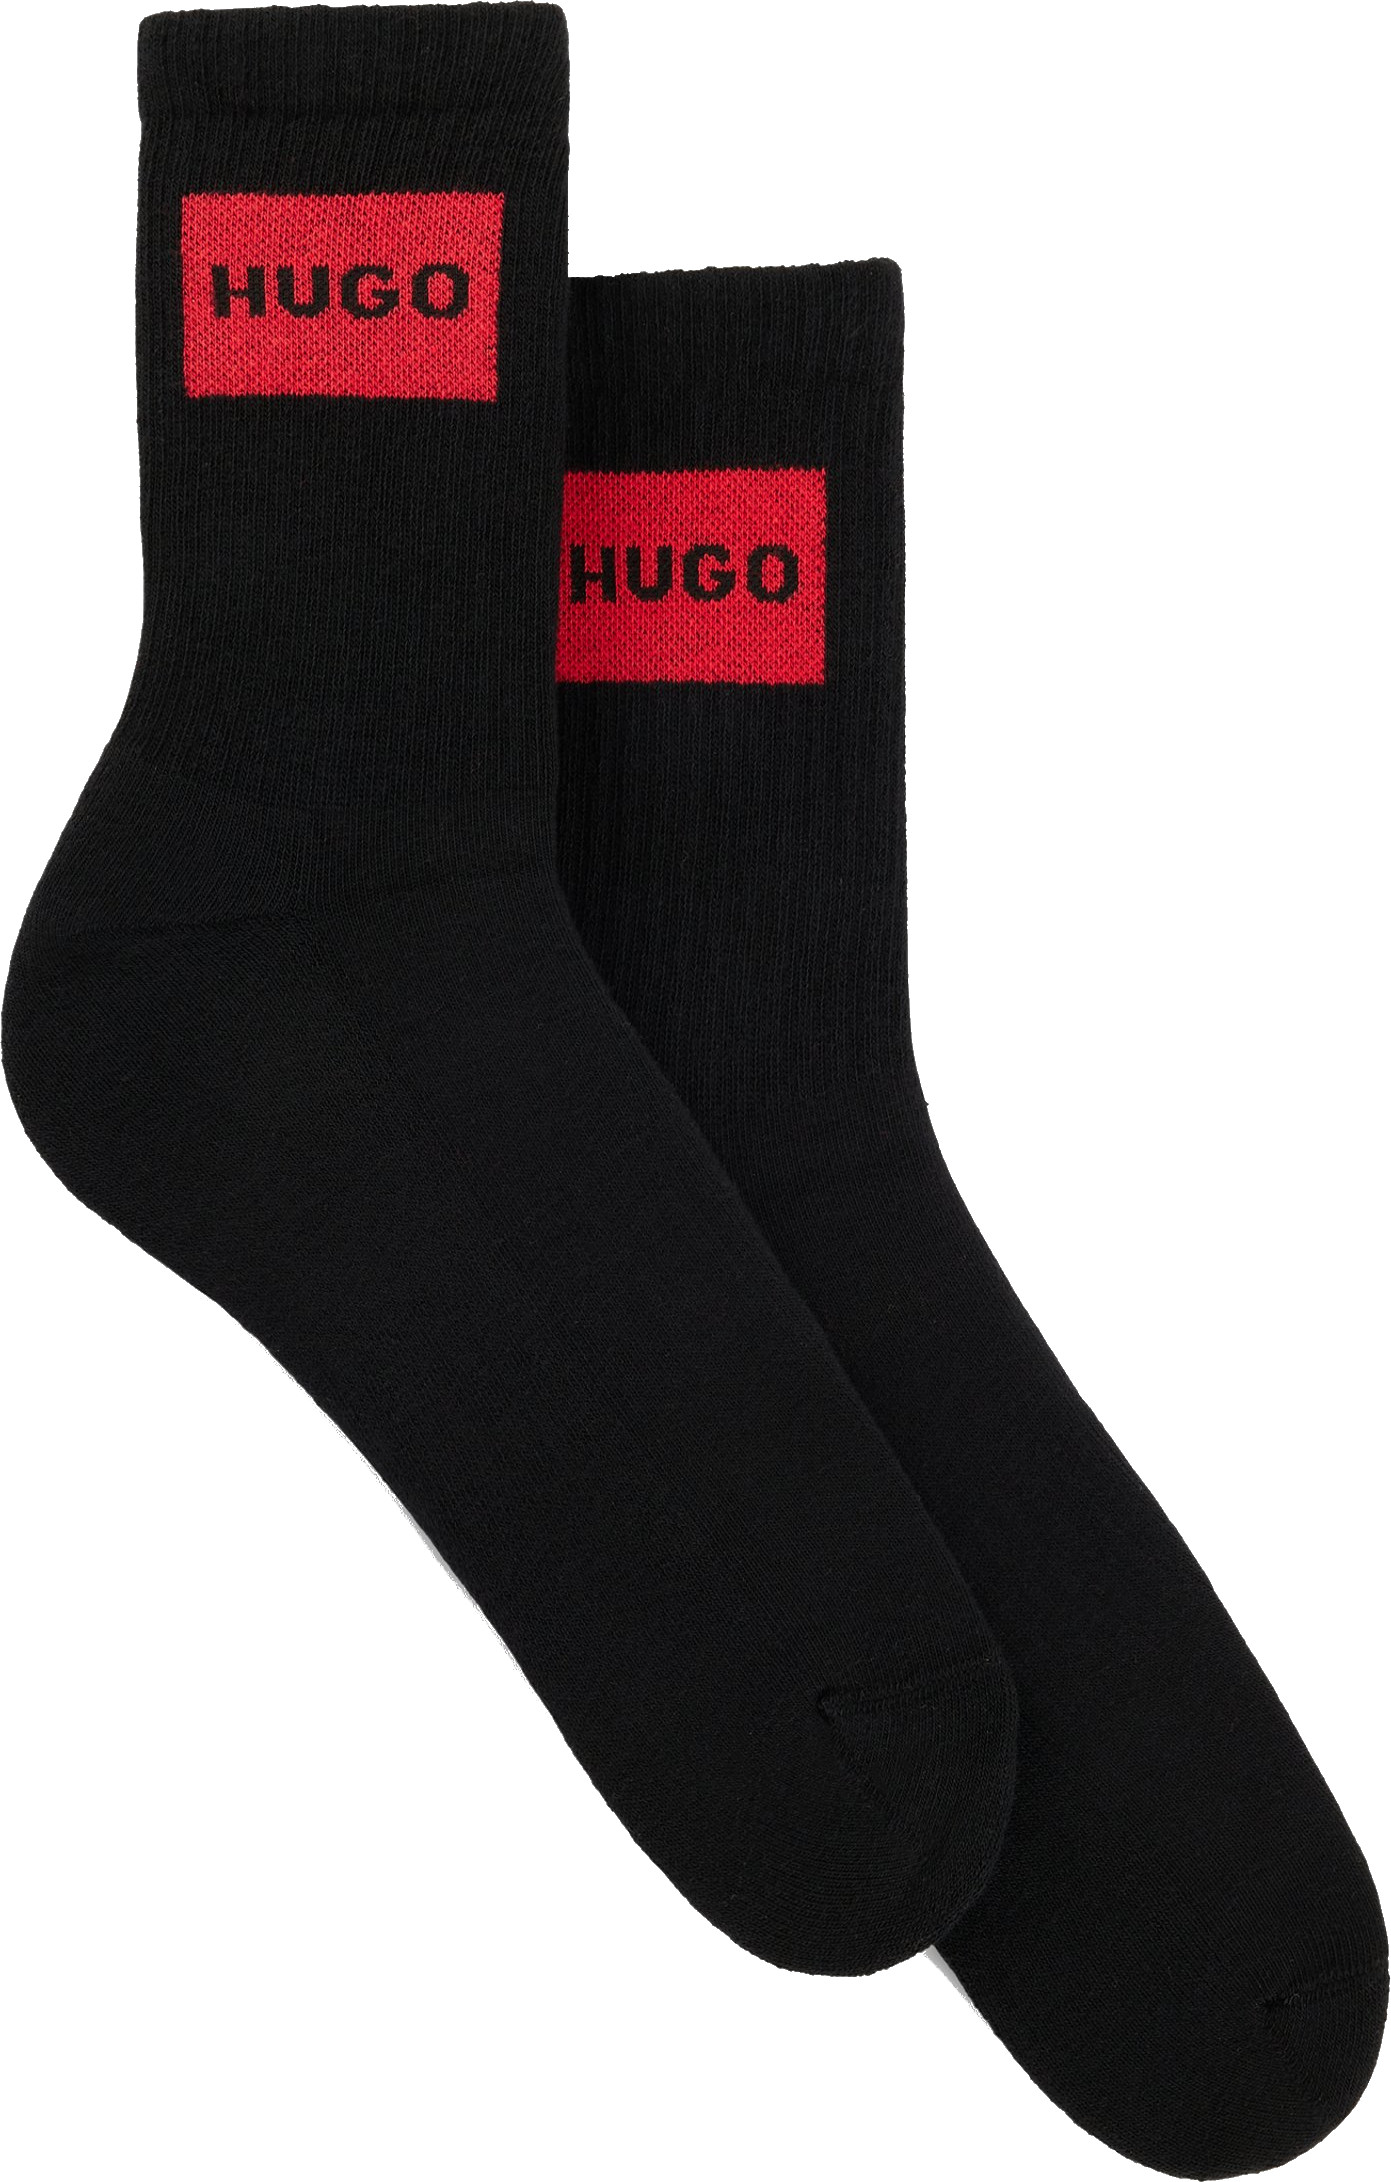 Hugo Boss 2 PACK - dámske ponožky HUGO 50510661-001 35-38